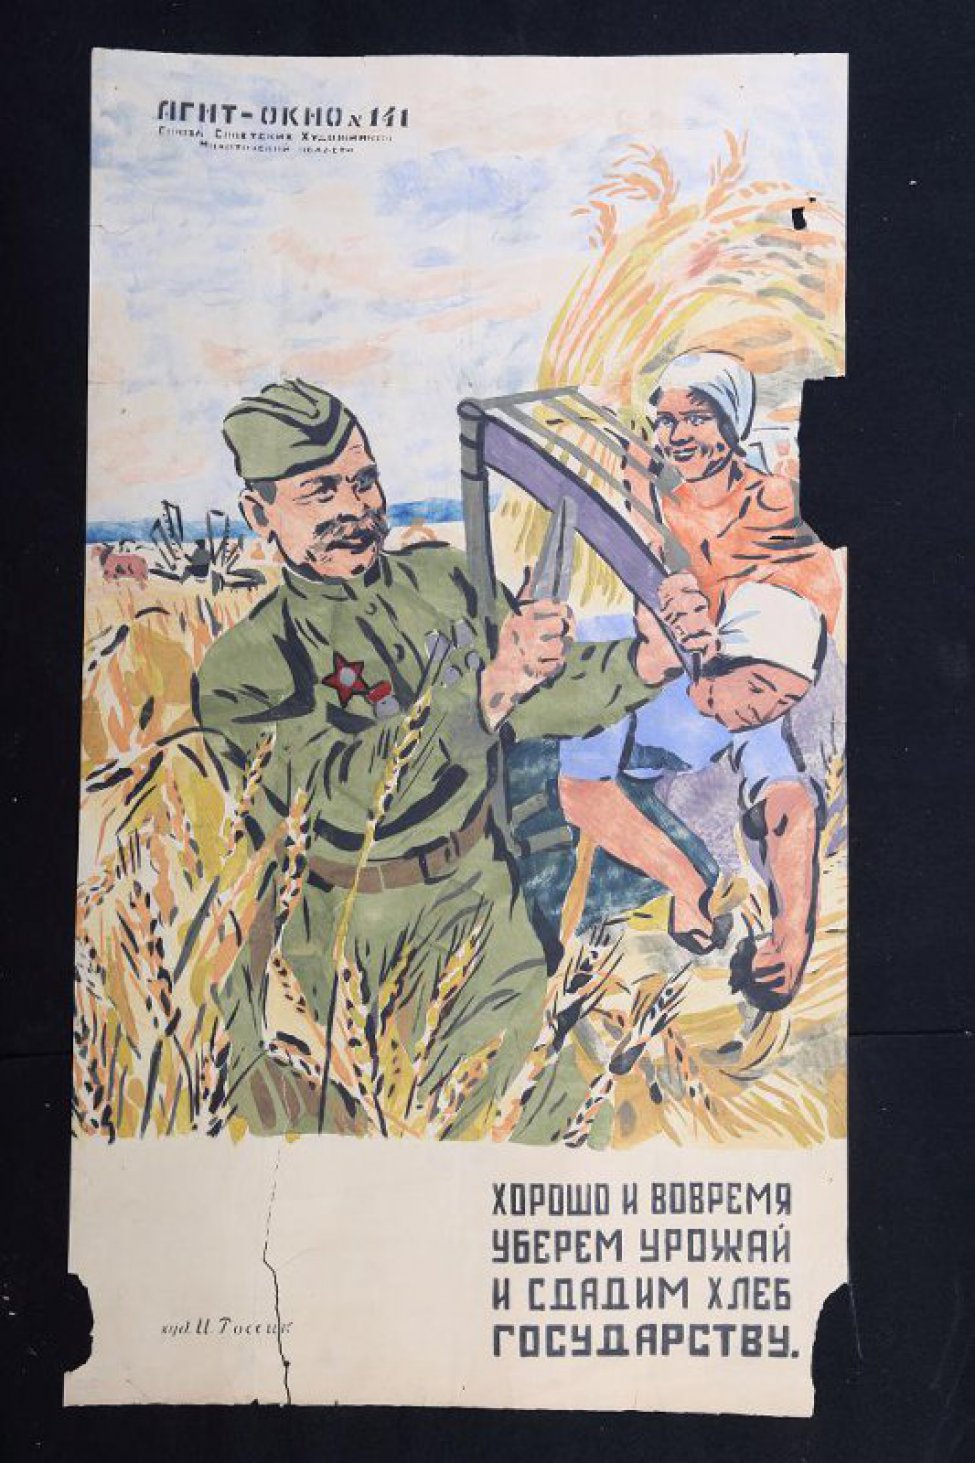 Изображено: демобилизованный боец советской армии отбивает косу, женщины убирают хлеб, текст: " хорошо и вовремя уберем урожай и сдадим хлеб государству."